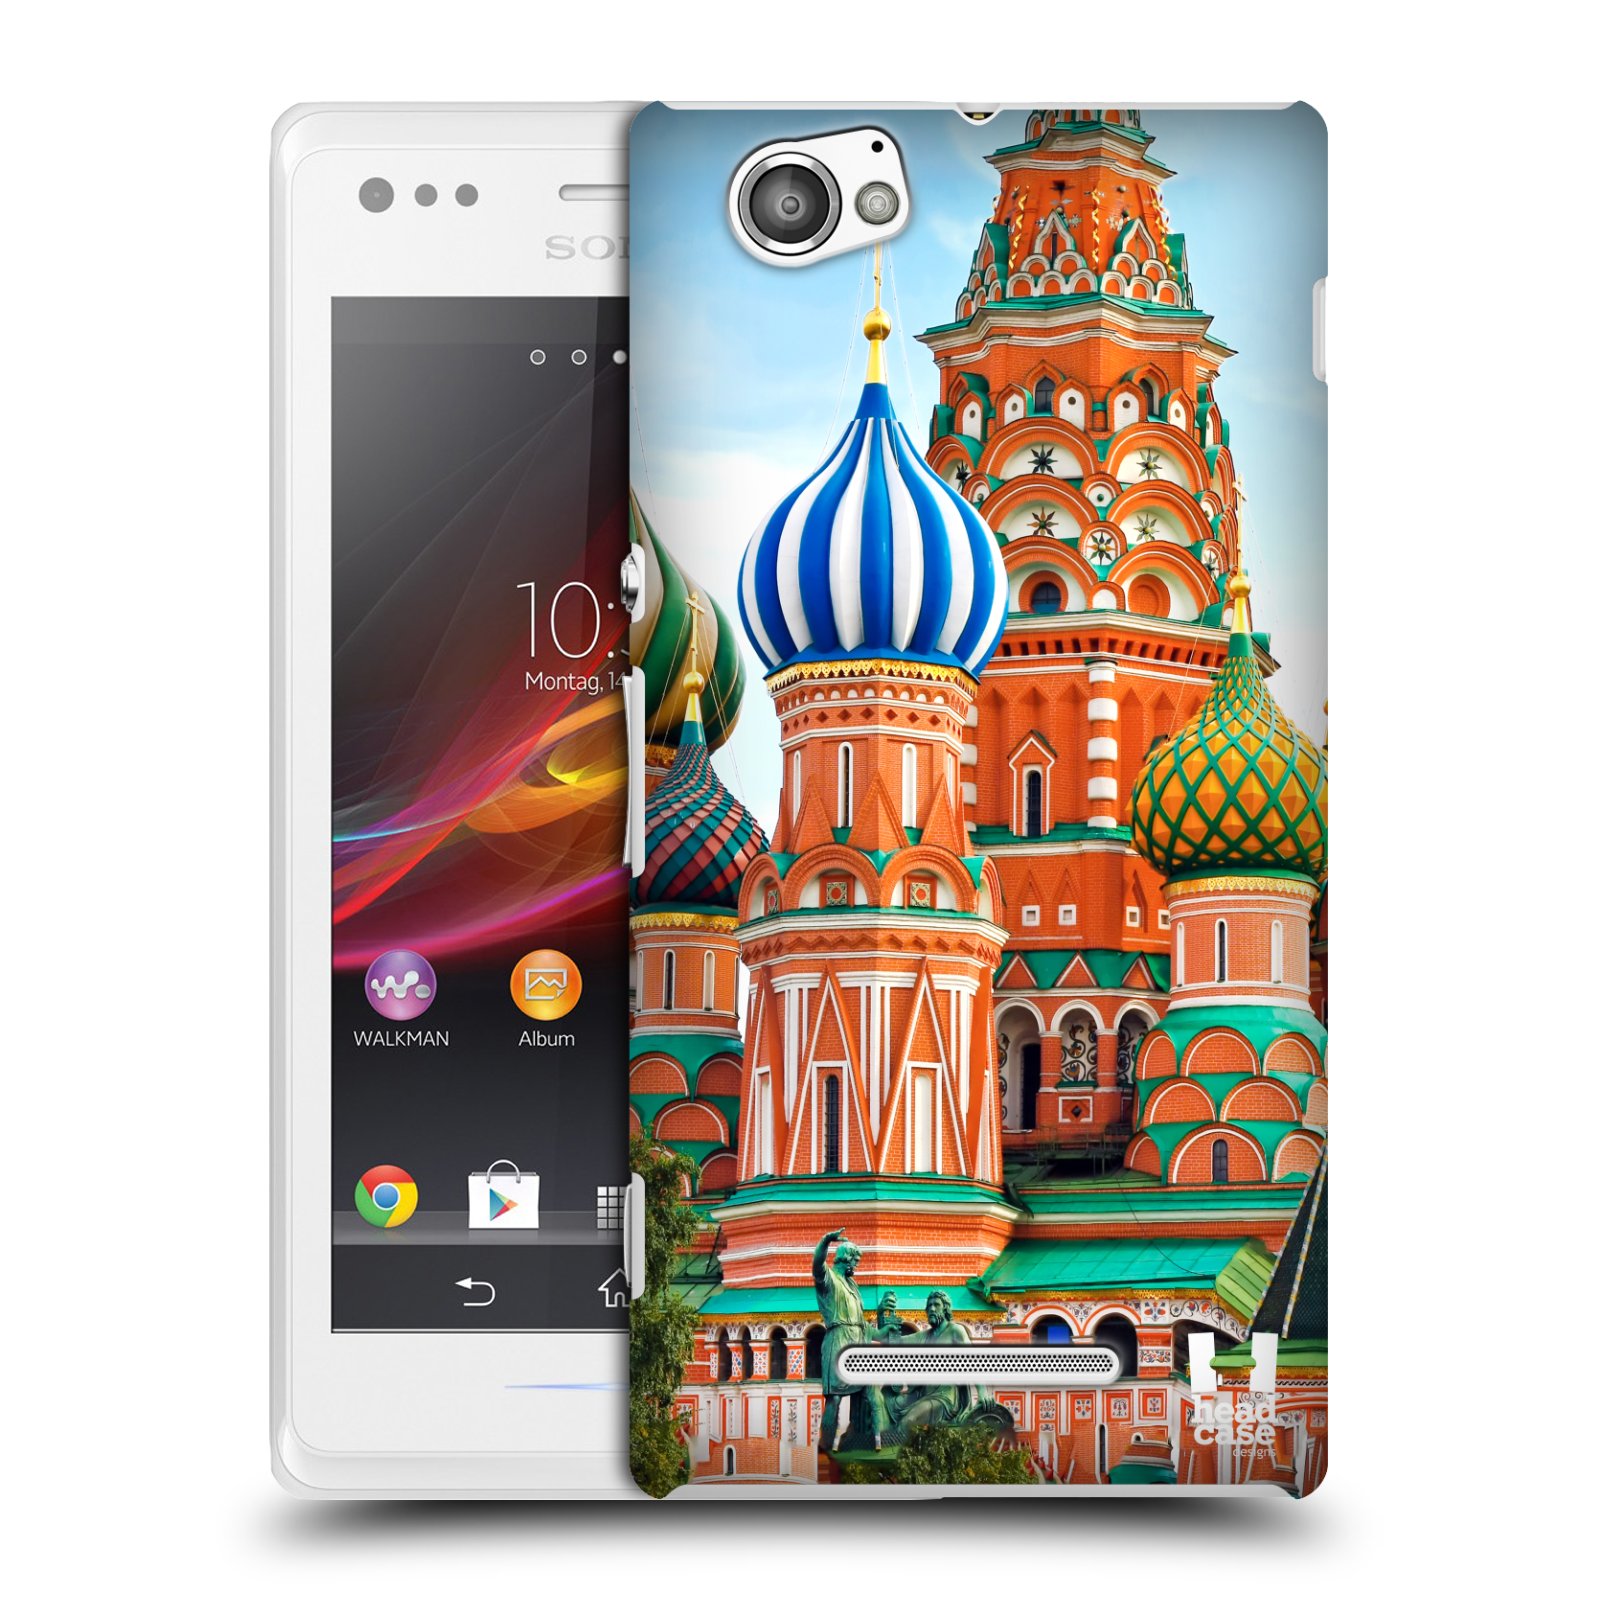 HEAD CASE plastový obal na mobil Sony Xperia M vzor Města foto náměstí RUSKO,MOSKVA, RUDÉ NÁMĚSTÍ